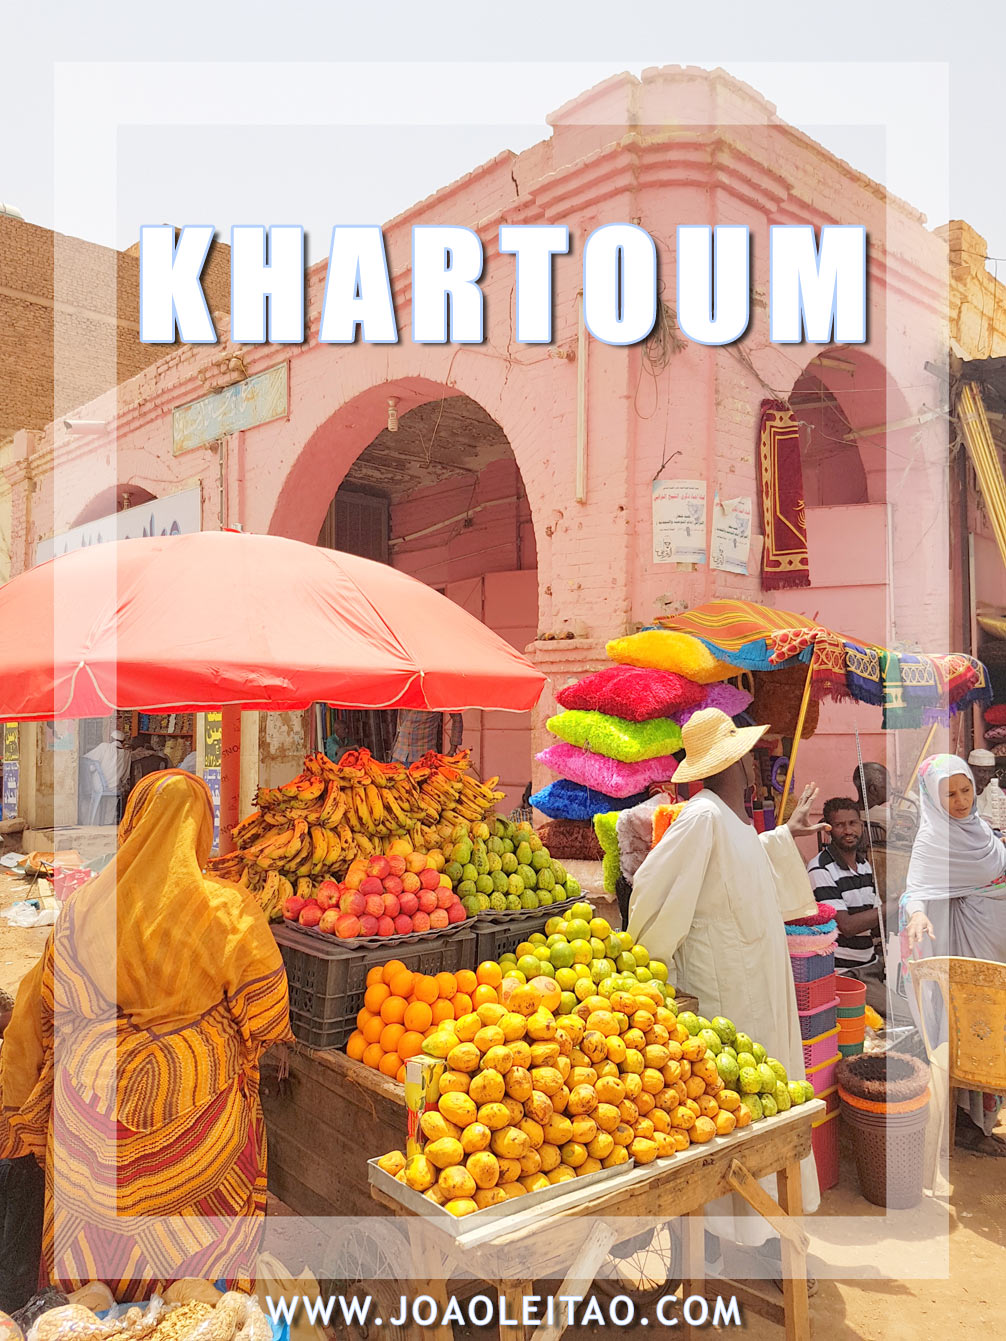 Visit Khartoum - Sudan: Top Places & Museums